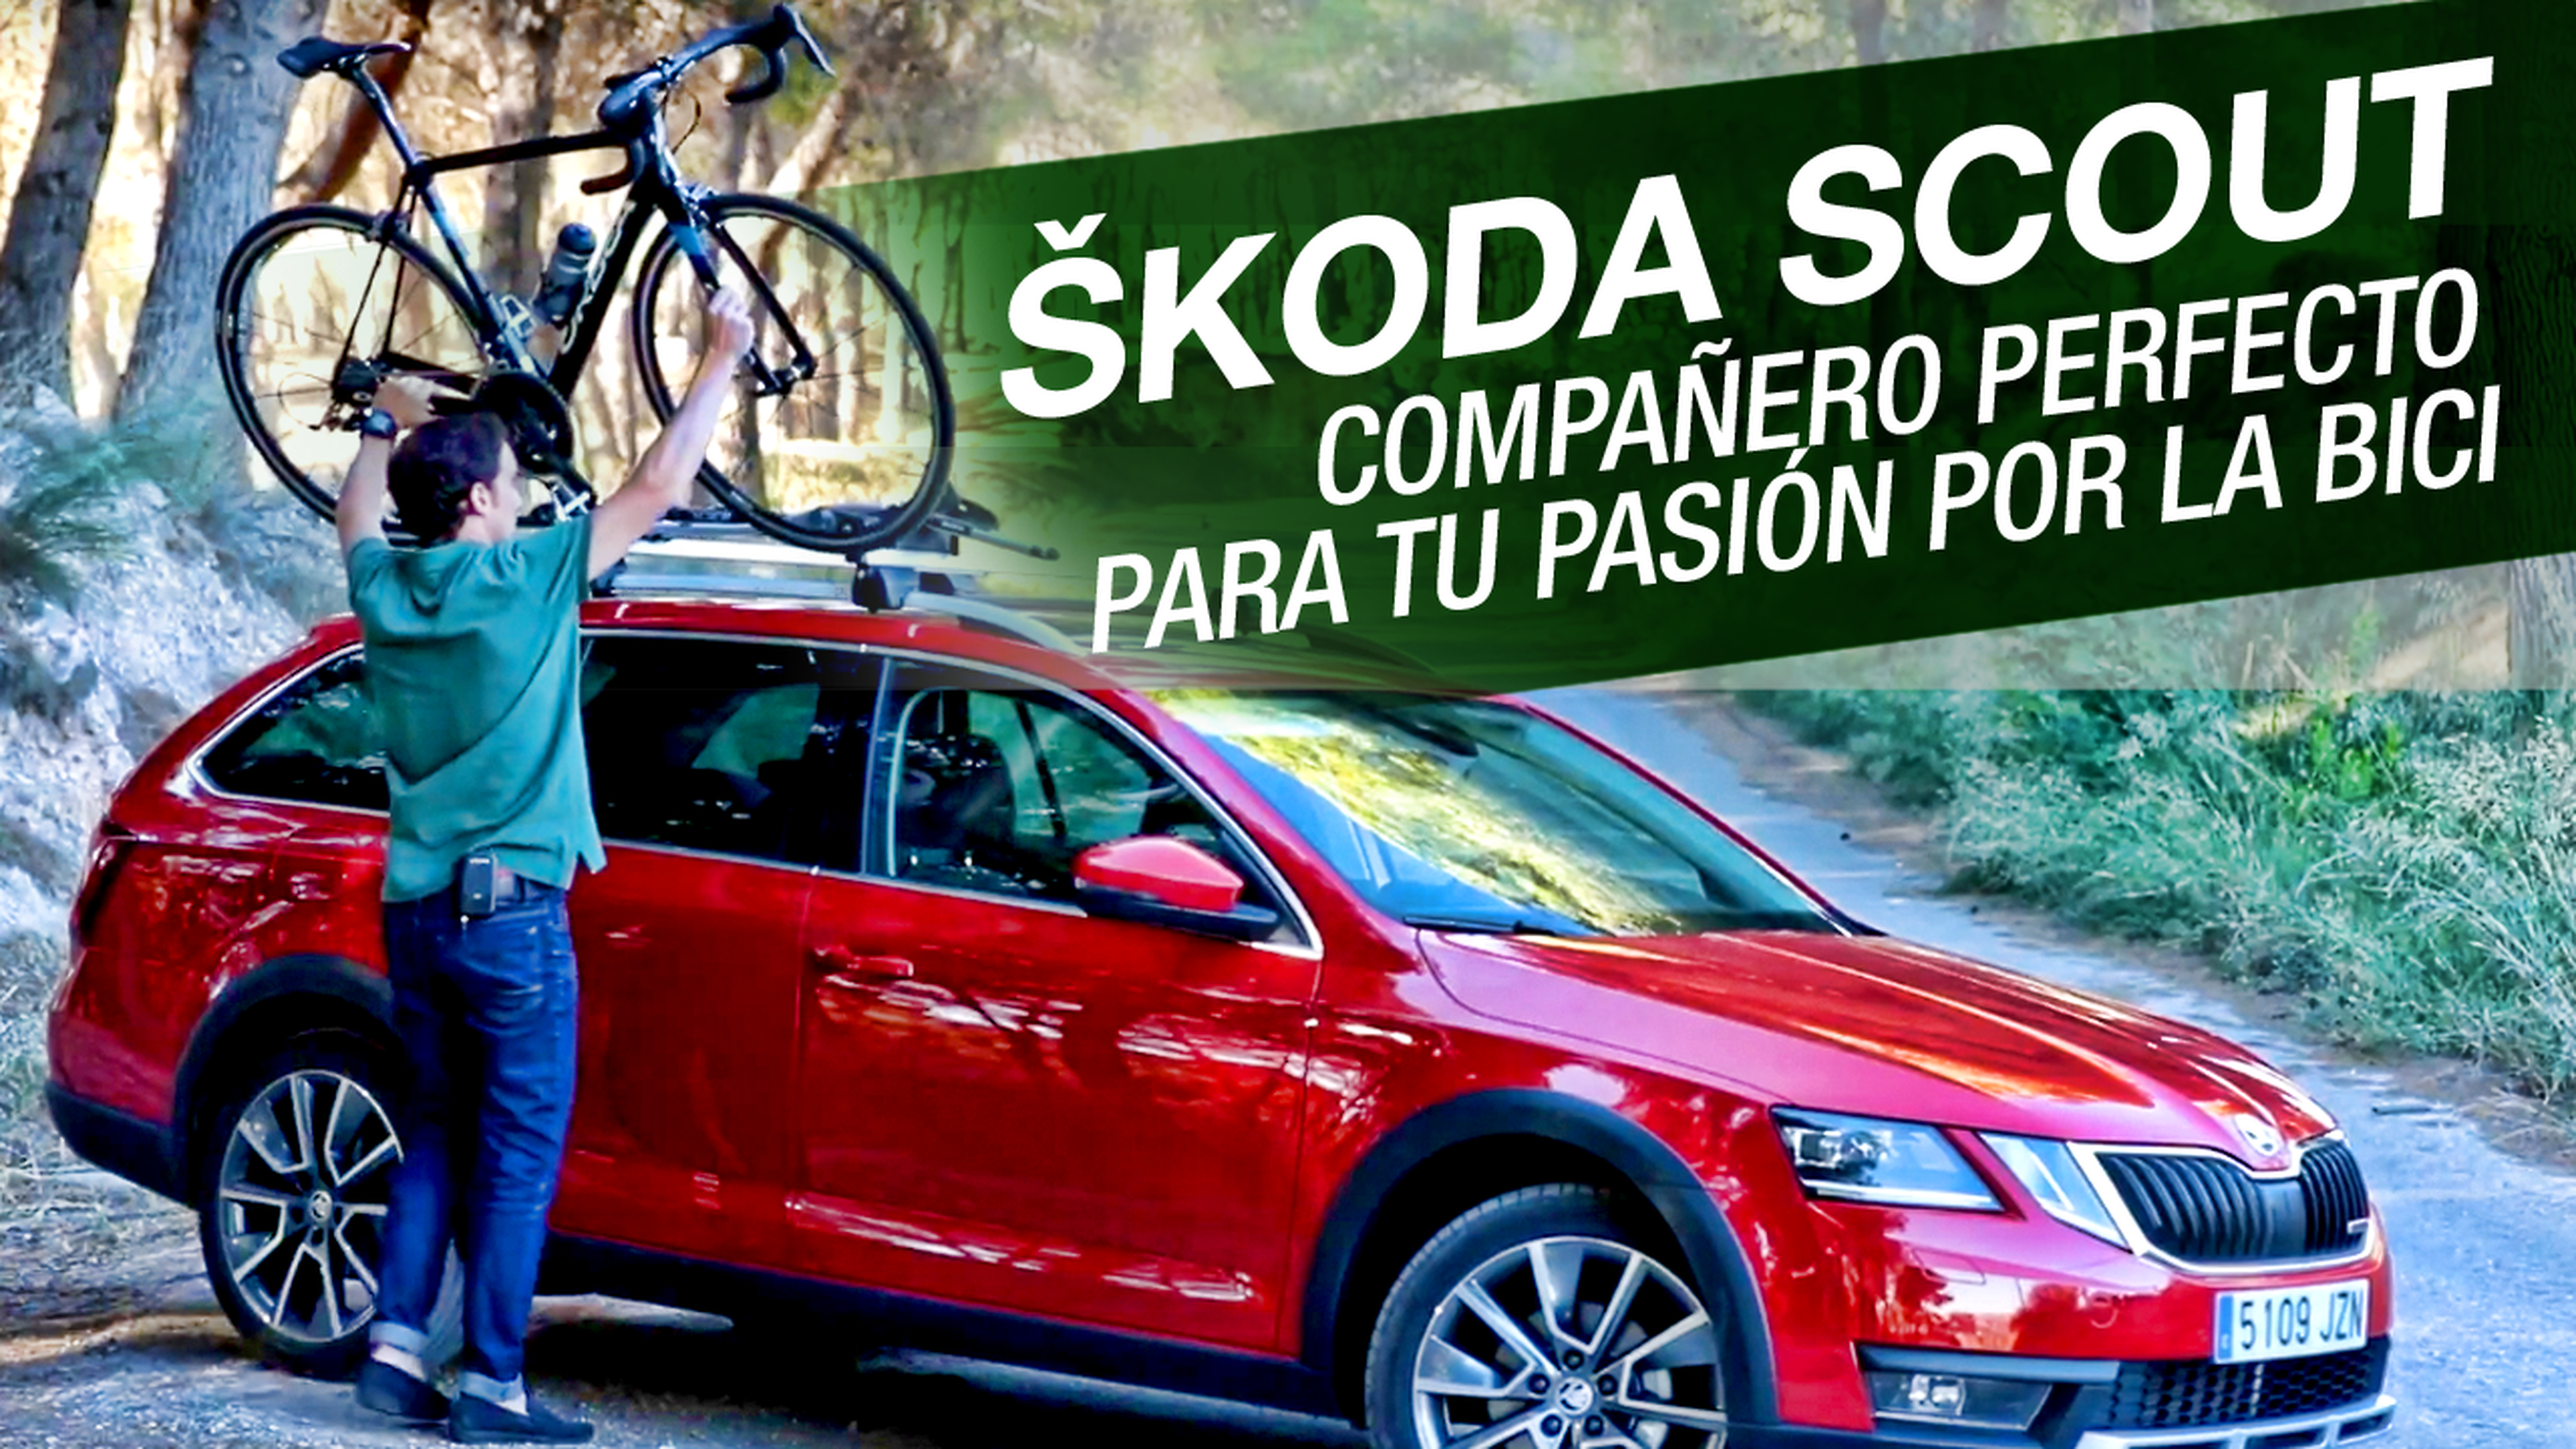 Skoda Scout: Compañero perfecto para tu pasión por la bici